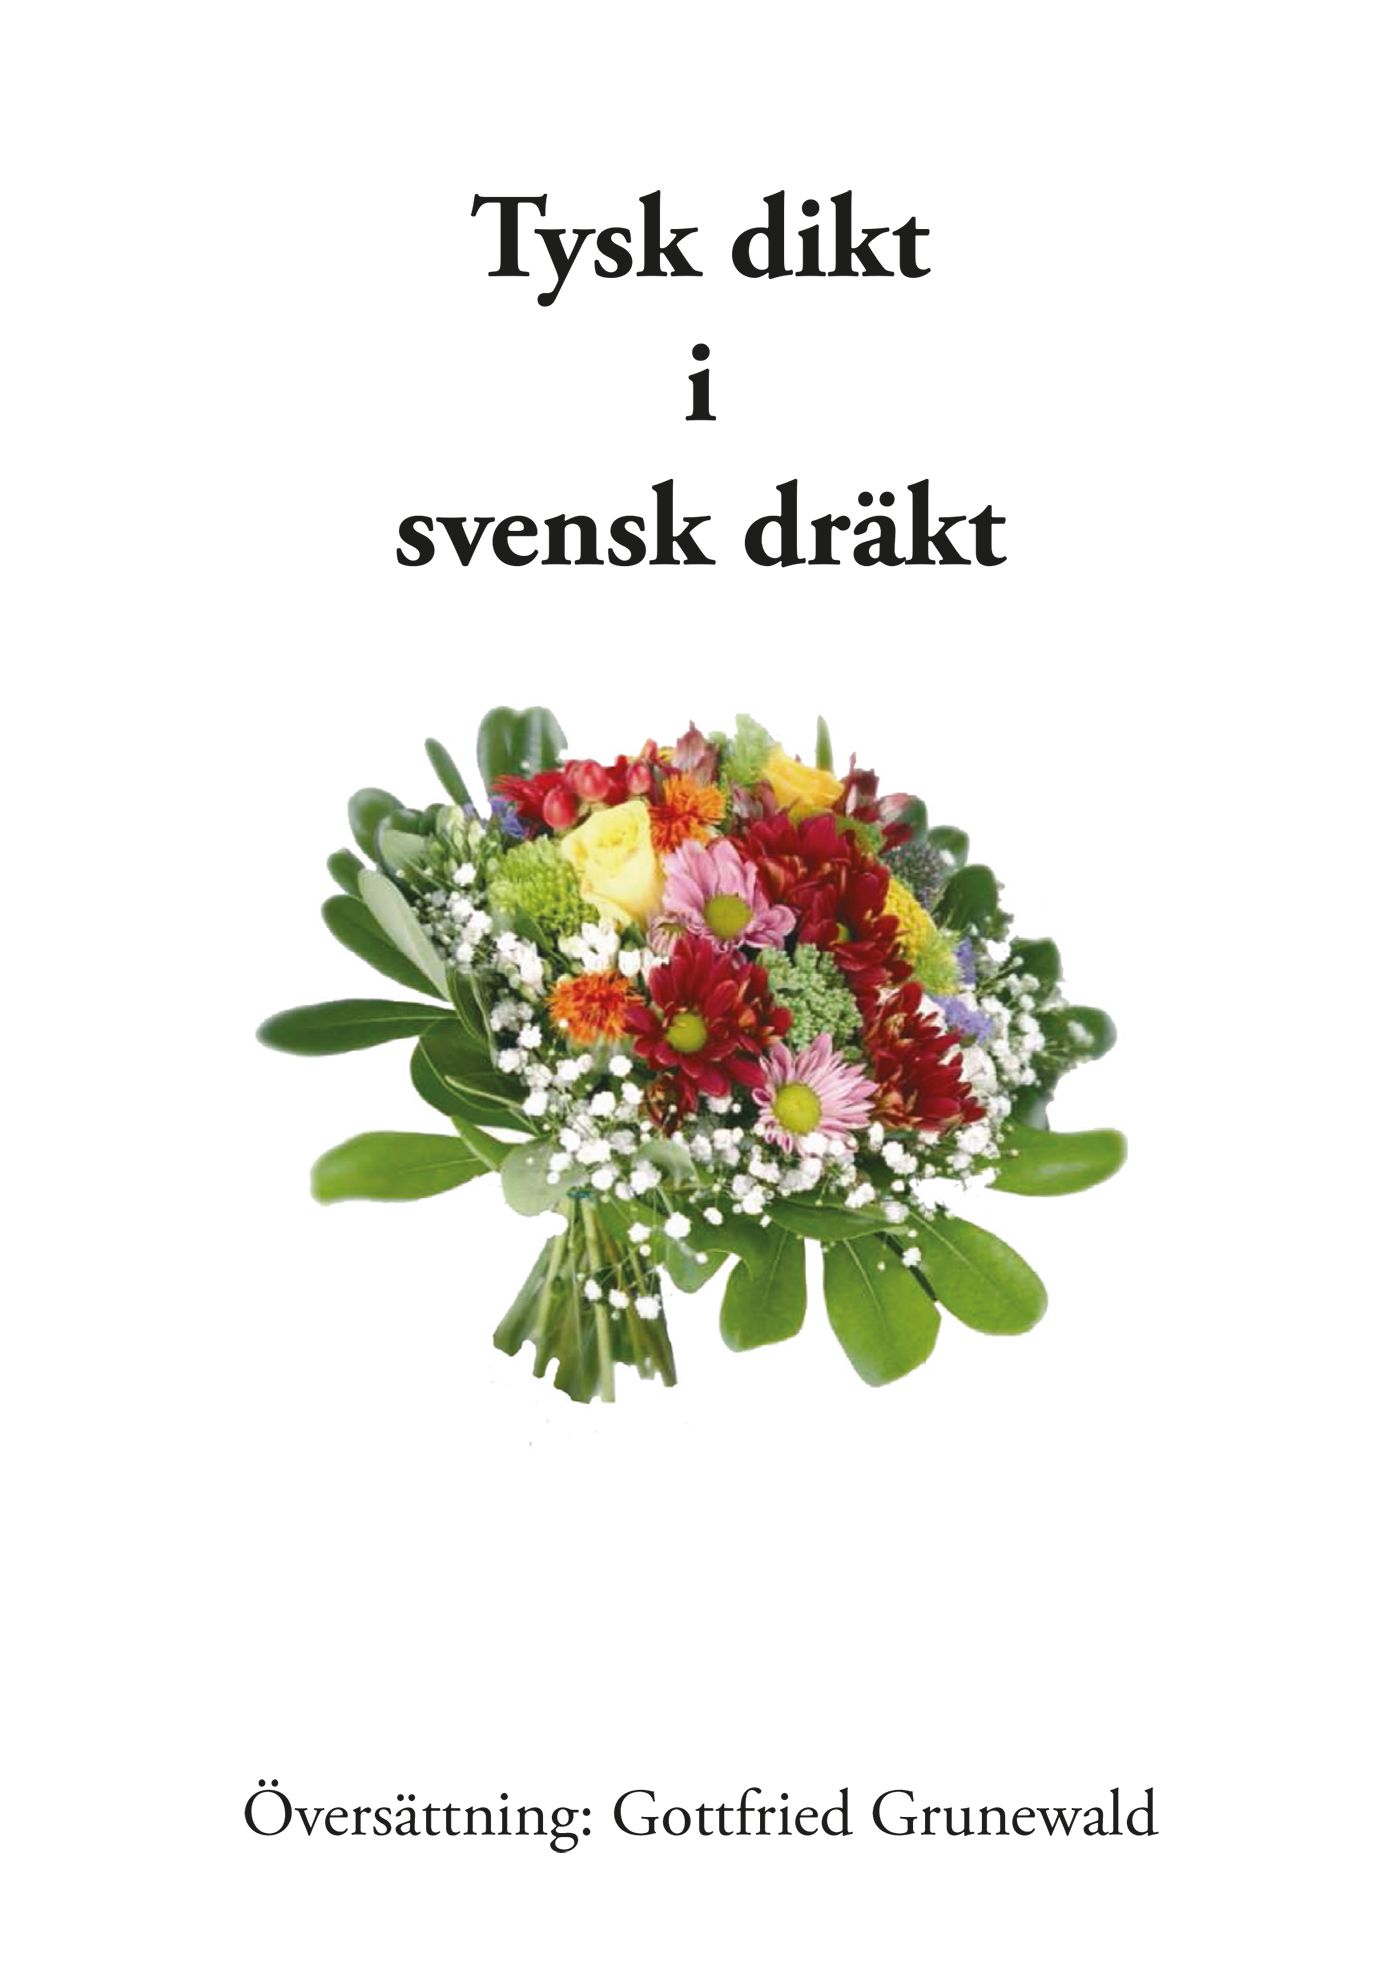 Tysk dikt i svensk dräkt, e-bog af Gottfried Grunewald